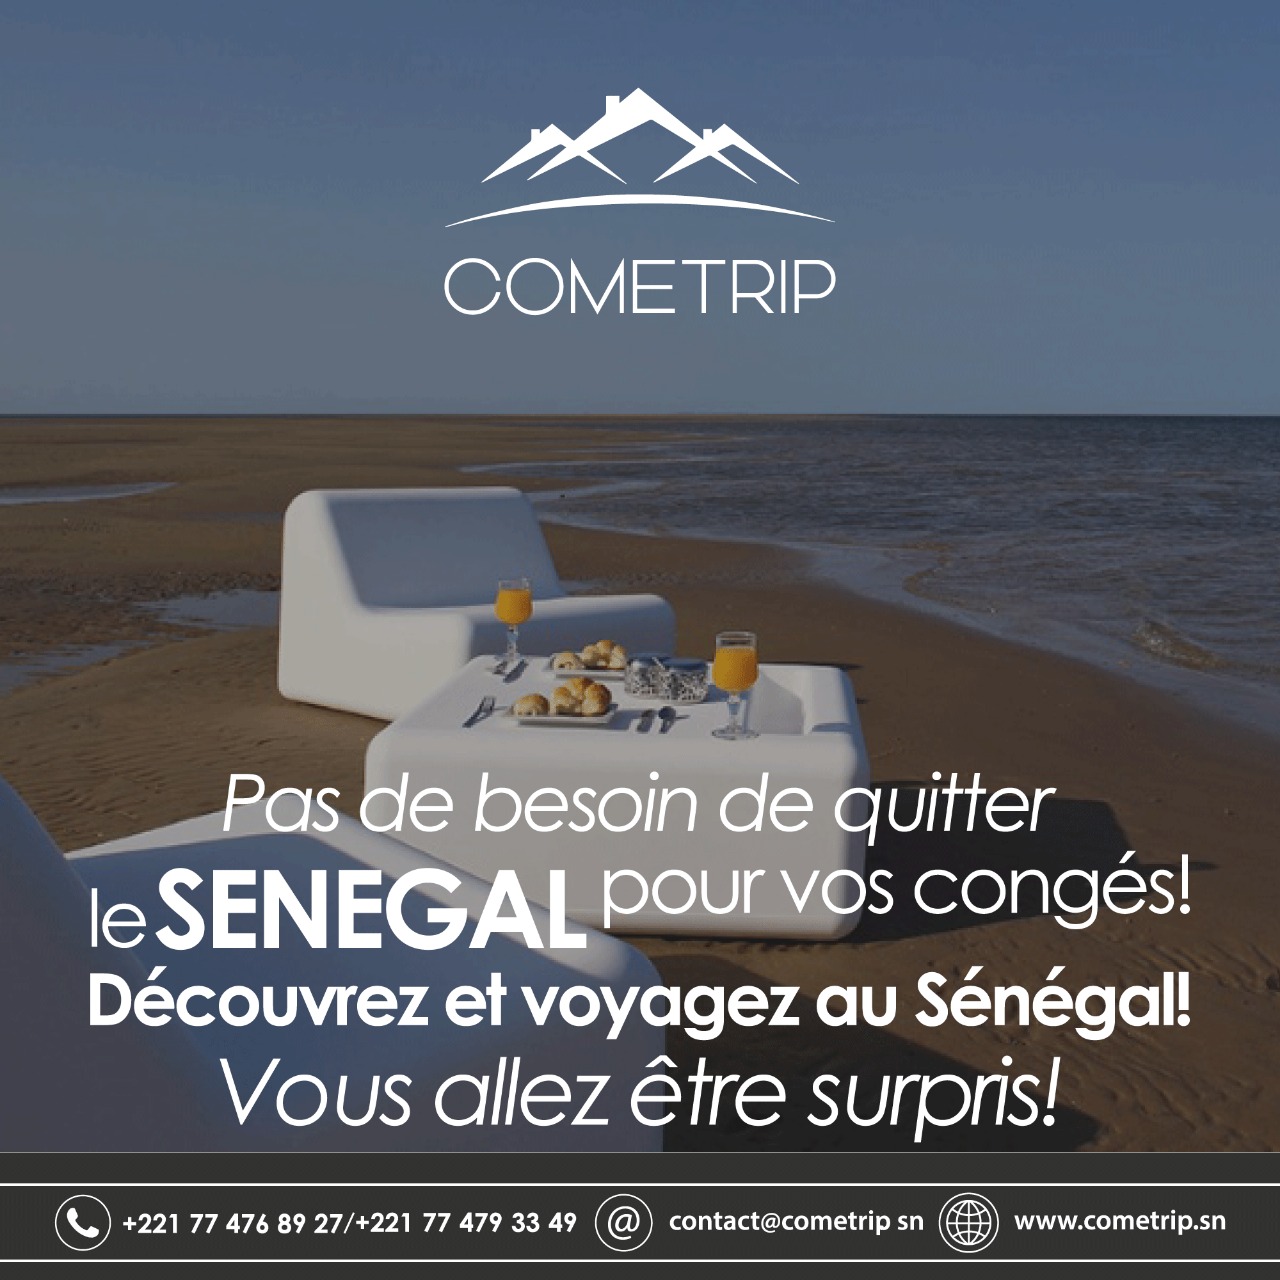 Avec ses offres diversifiées: L'agence de voyage Cometrip, une solution à la destination touristique sénégalaise